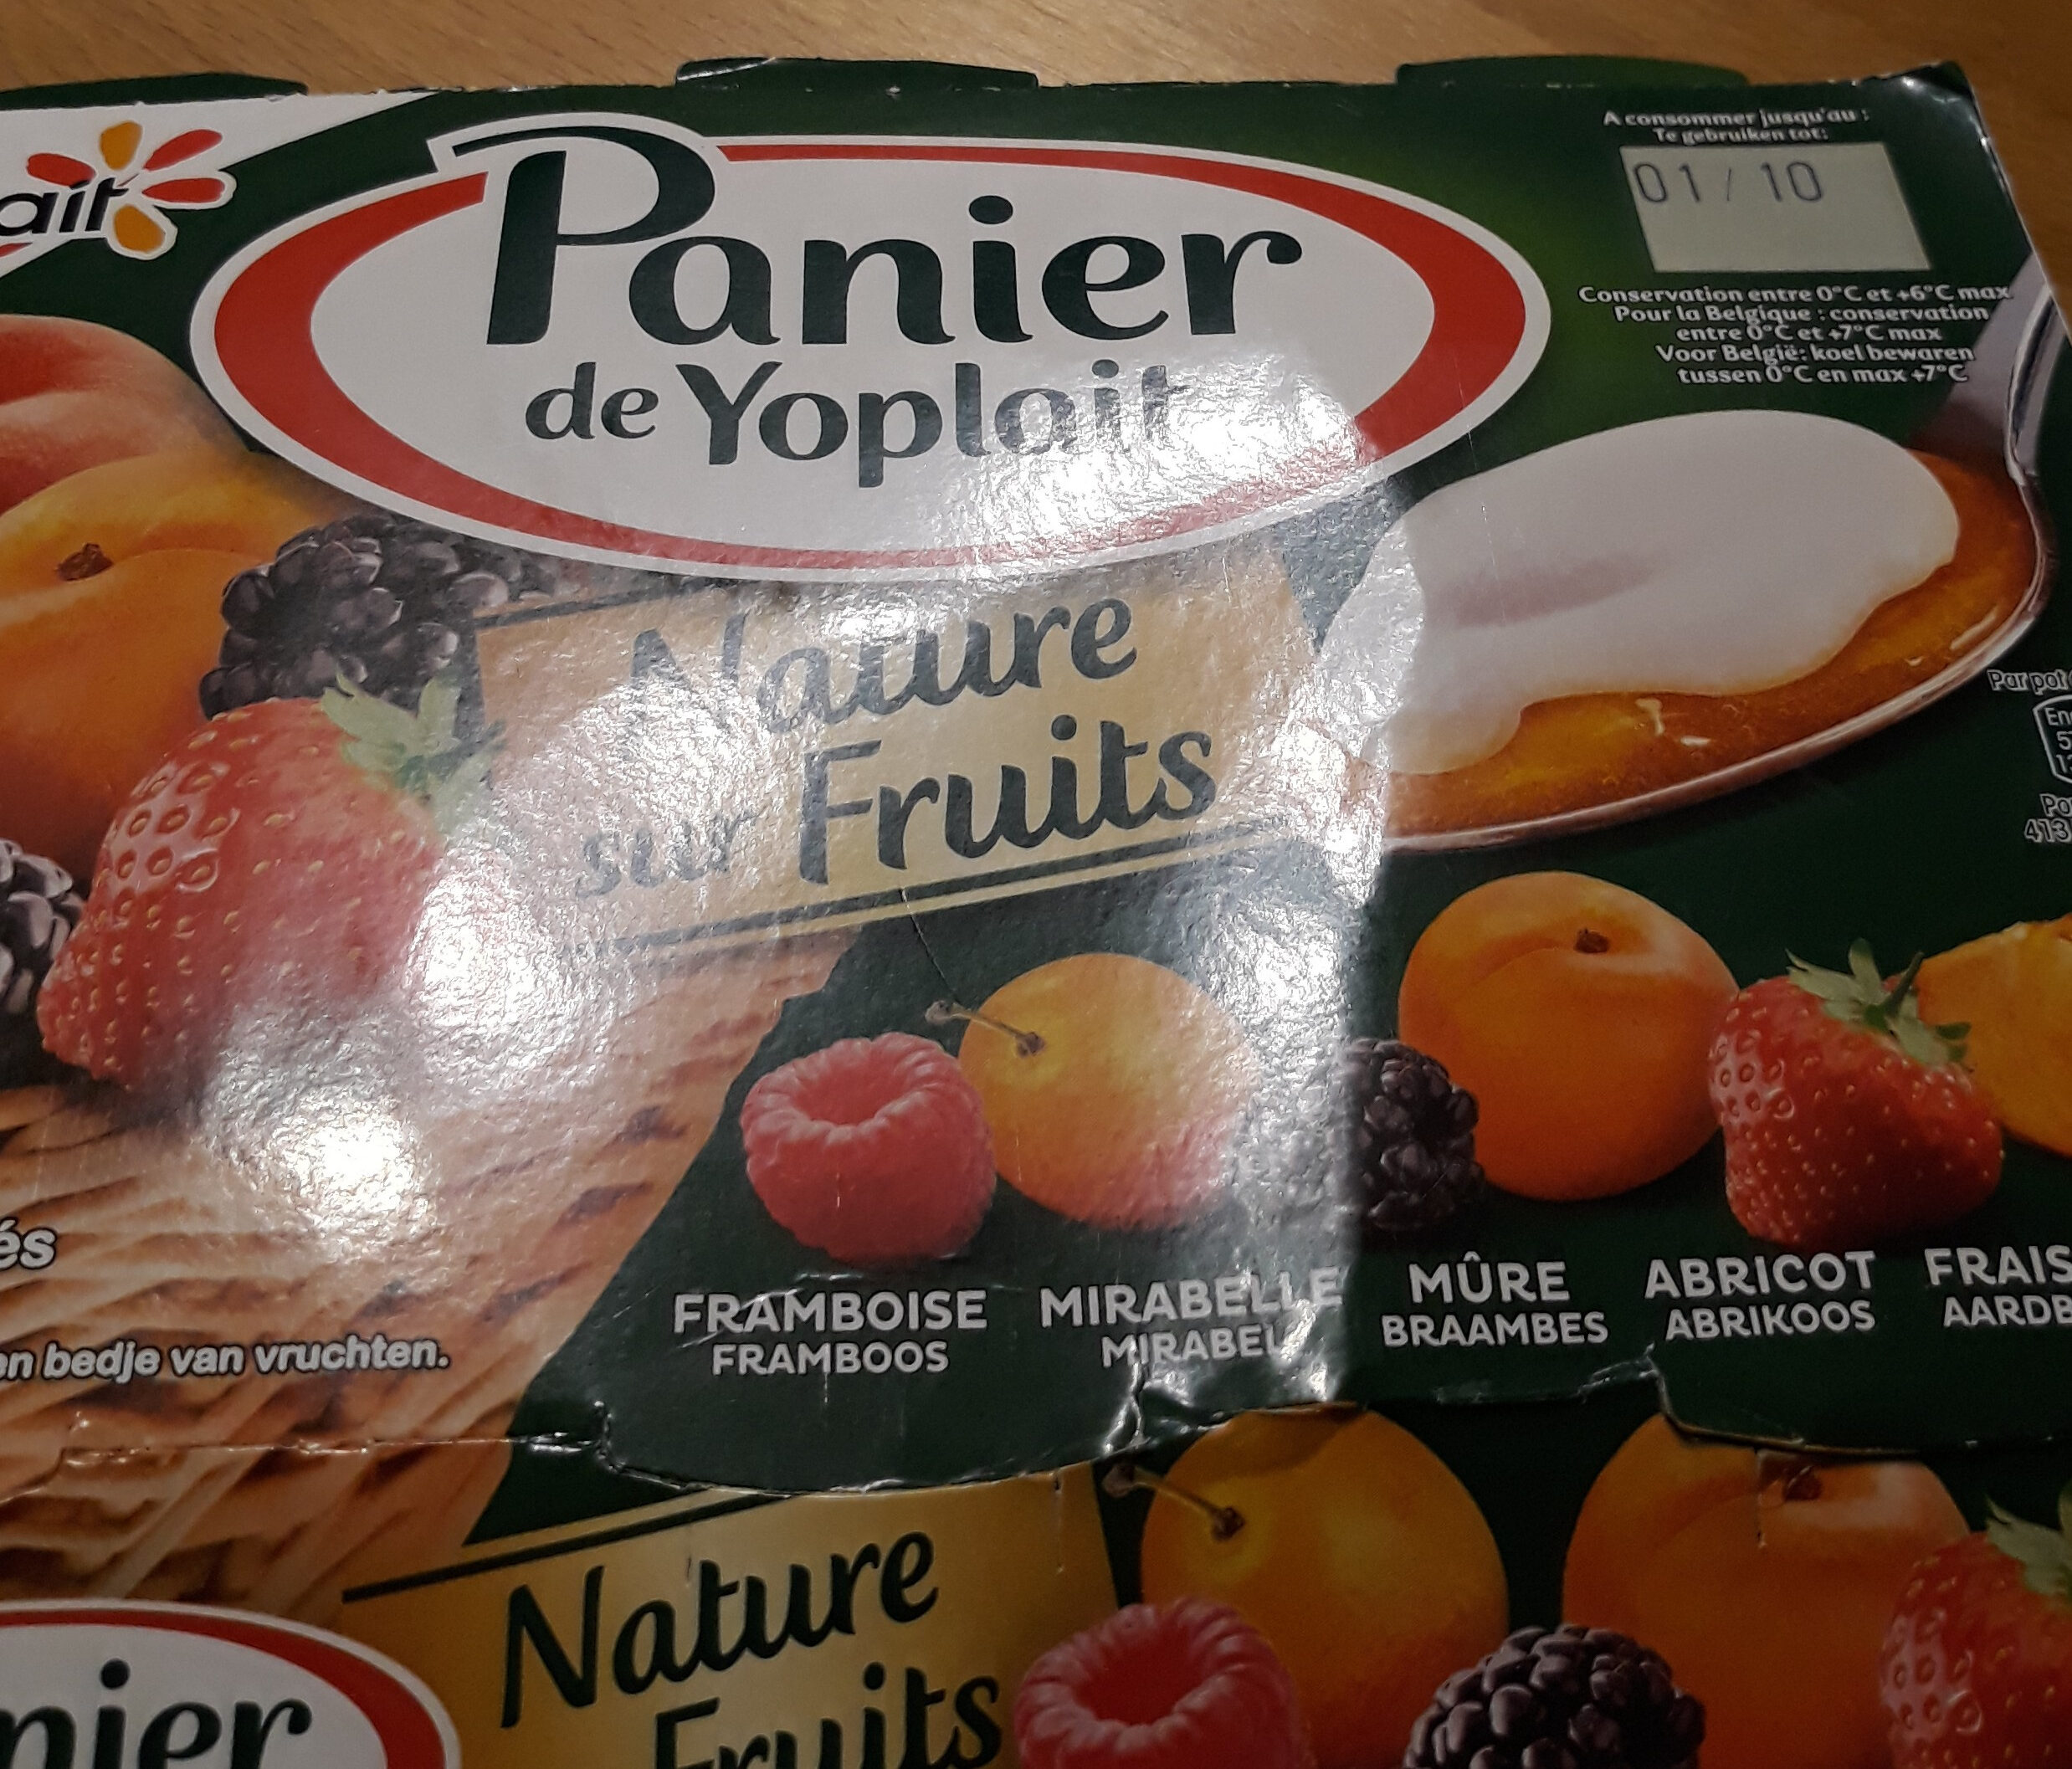 Panier de yoplait nature sur fruits - Product - fr